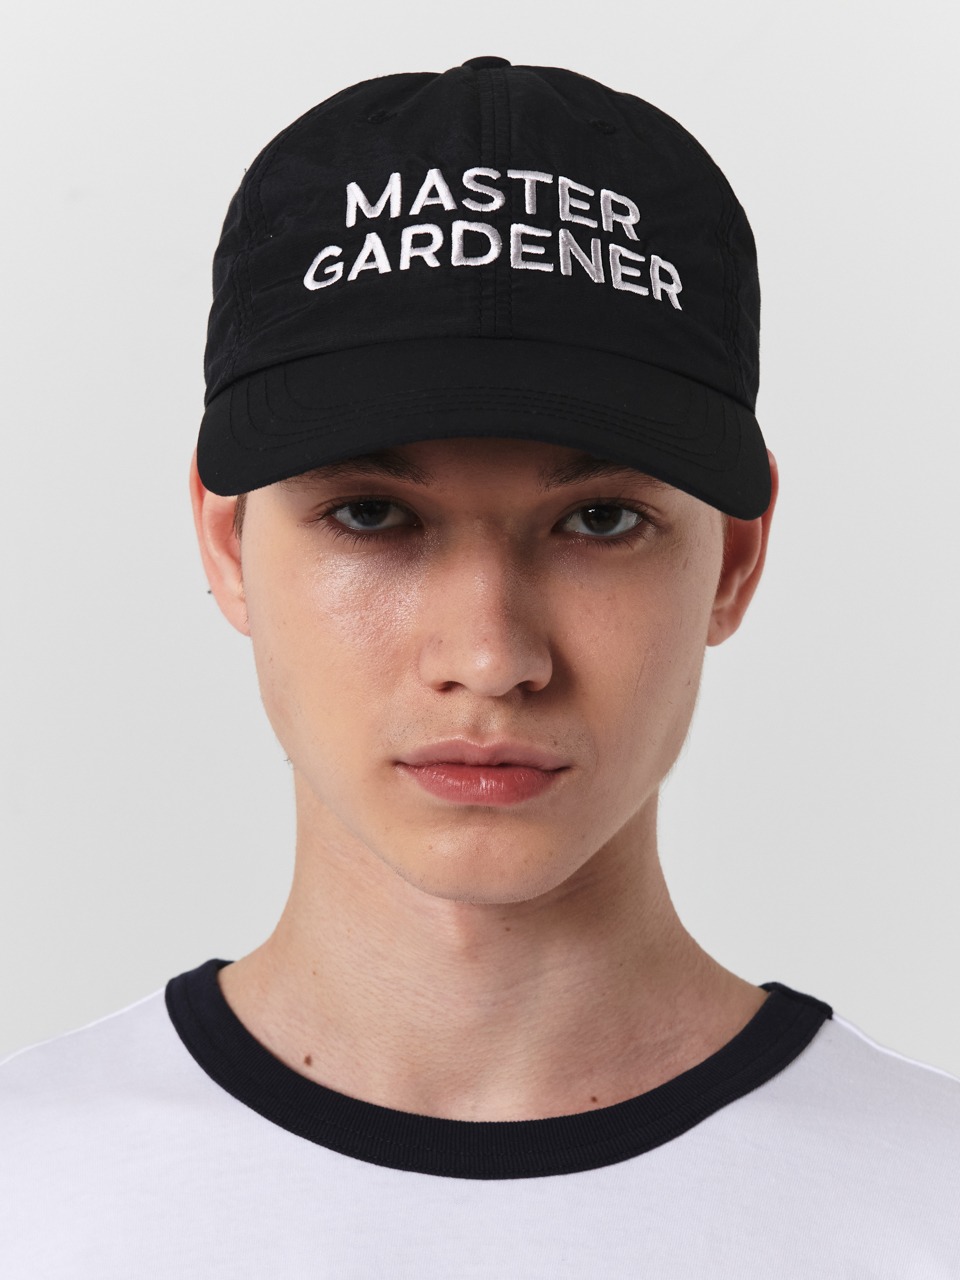 GARDEN EXPRESS - MASTER GARDENER BALL CAP (BLACK)